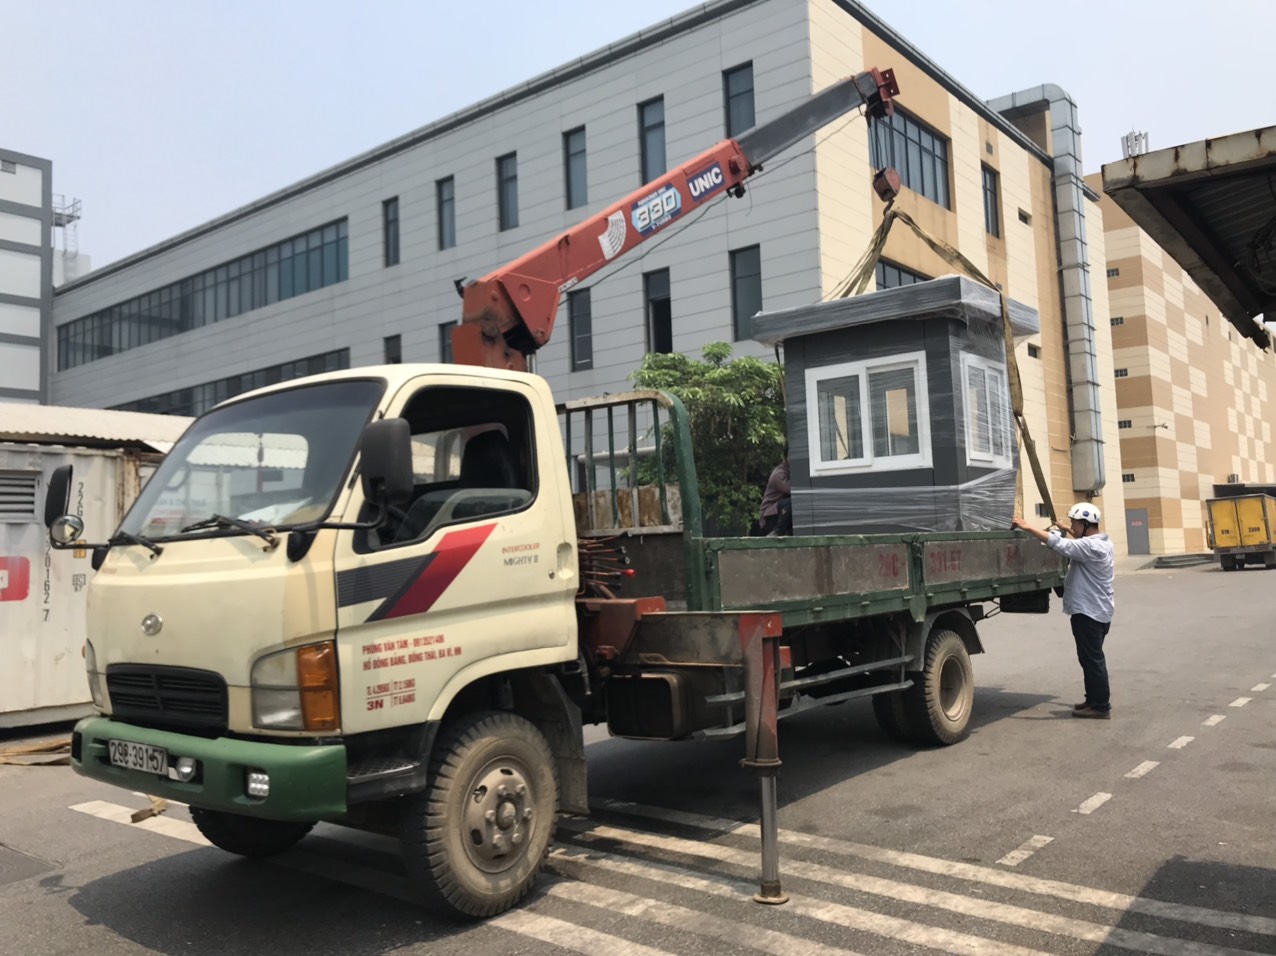 Vận Tải Xanh – Chuyên cho thuê xe tải cẩu cây xanh giá rẻ, uy tín tại Hà Nội